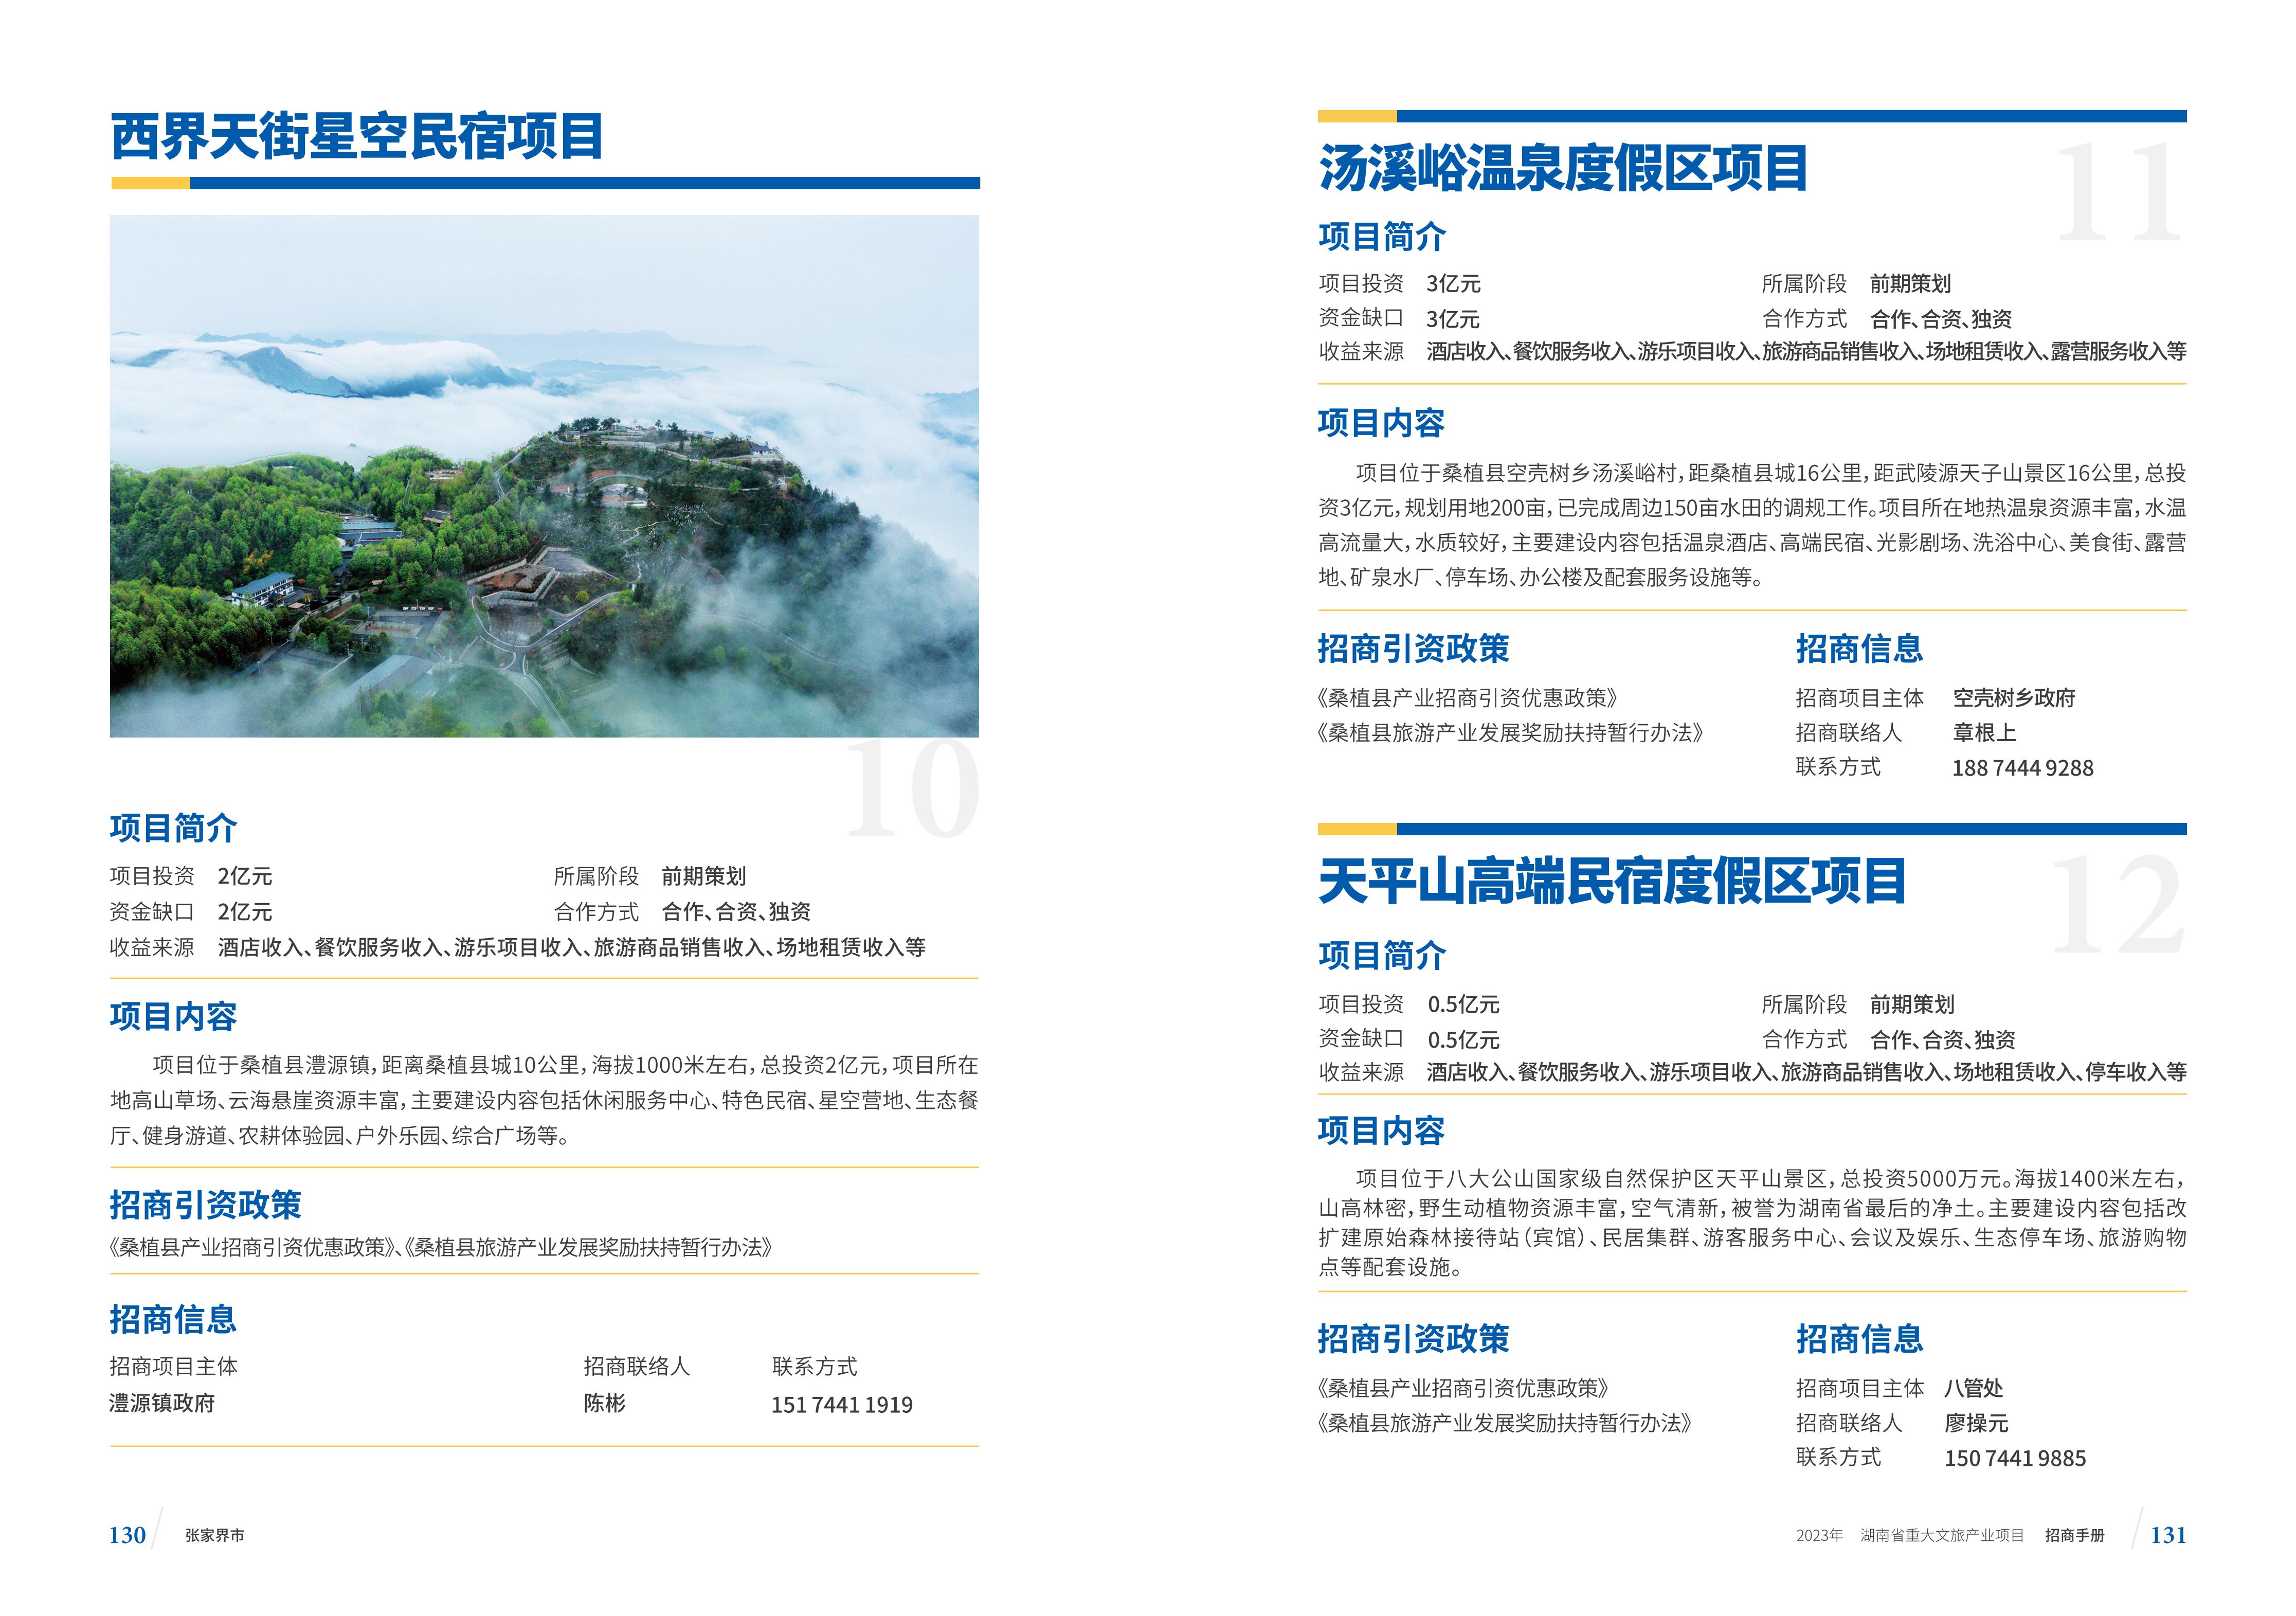 湖南省重大文旅产业项目招手册线上链接版_73.jpg